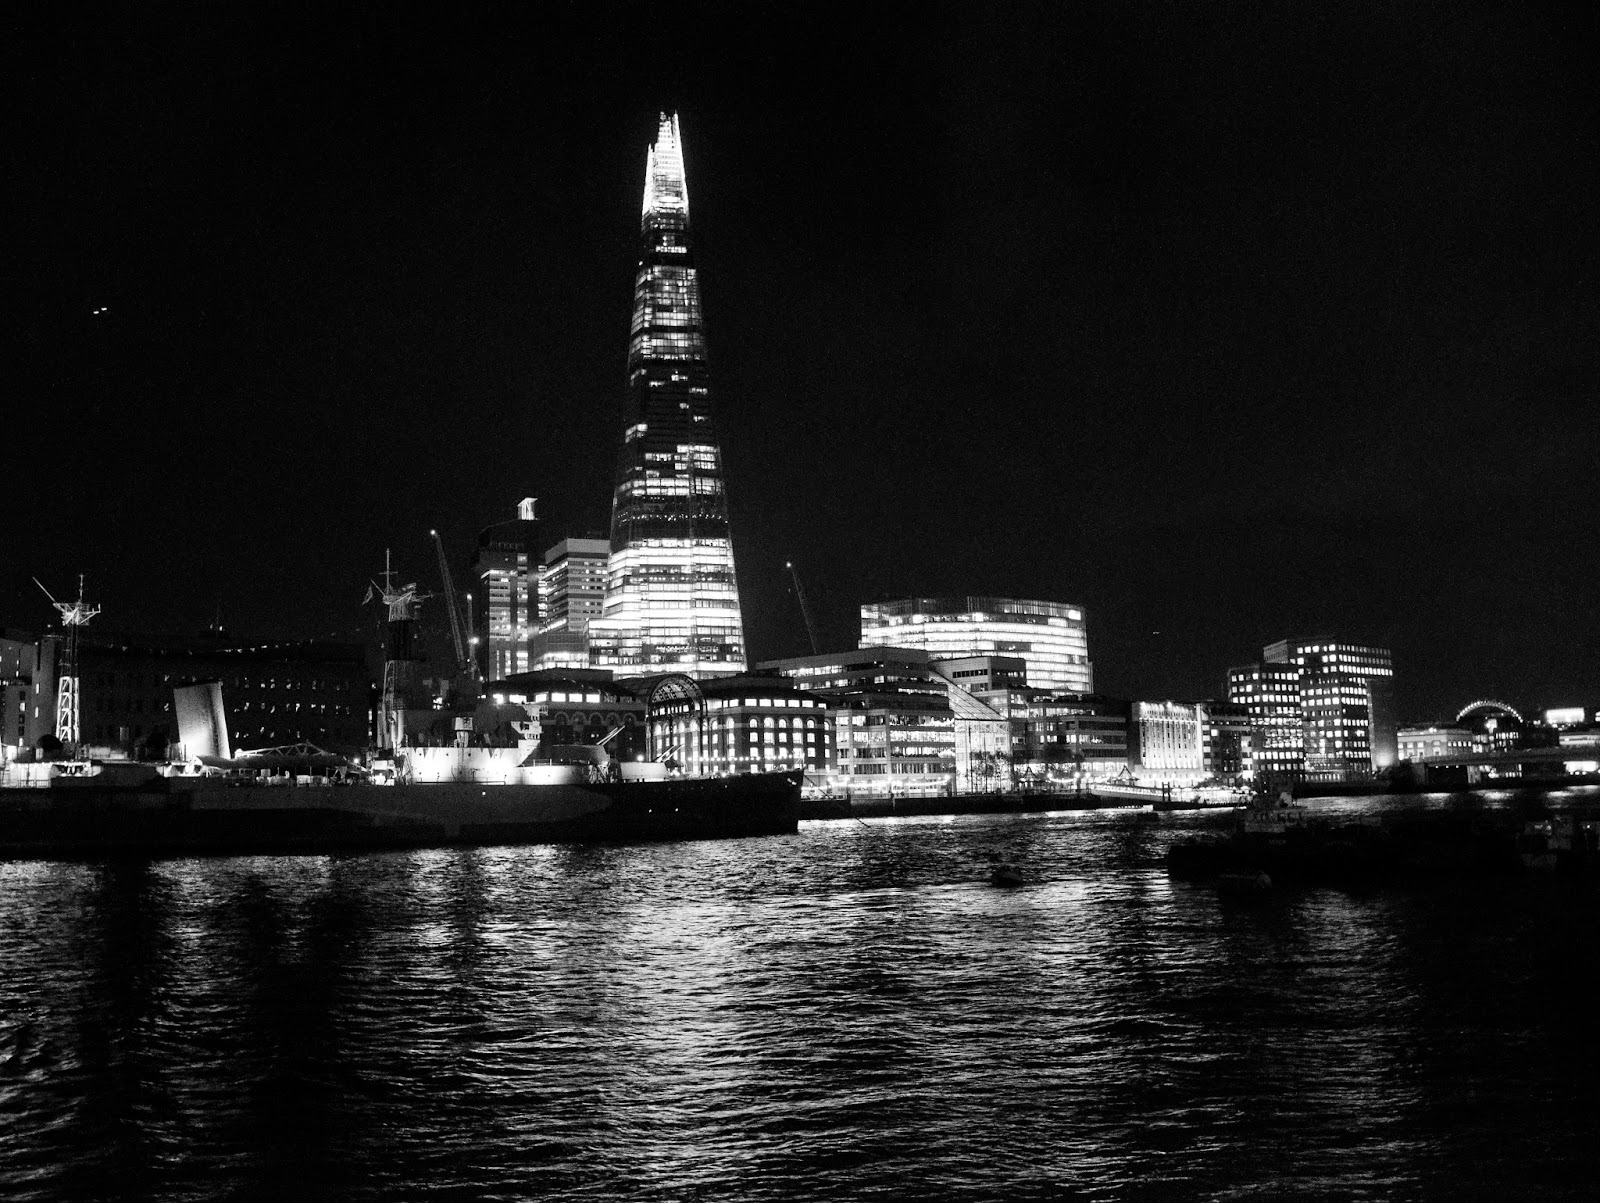 Monochrome London